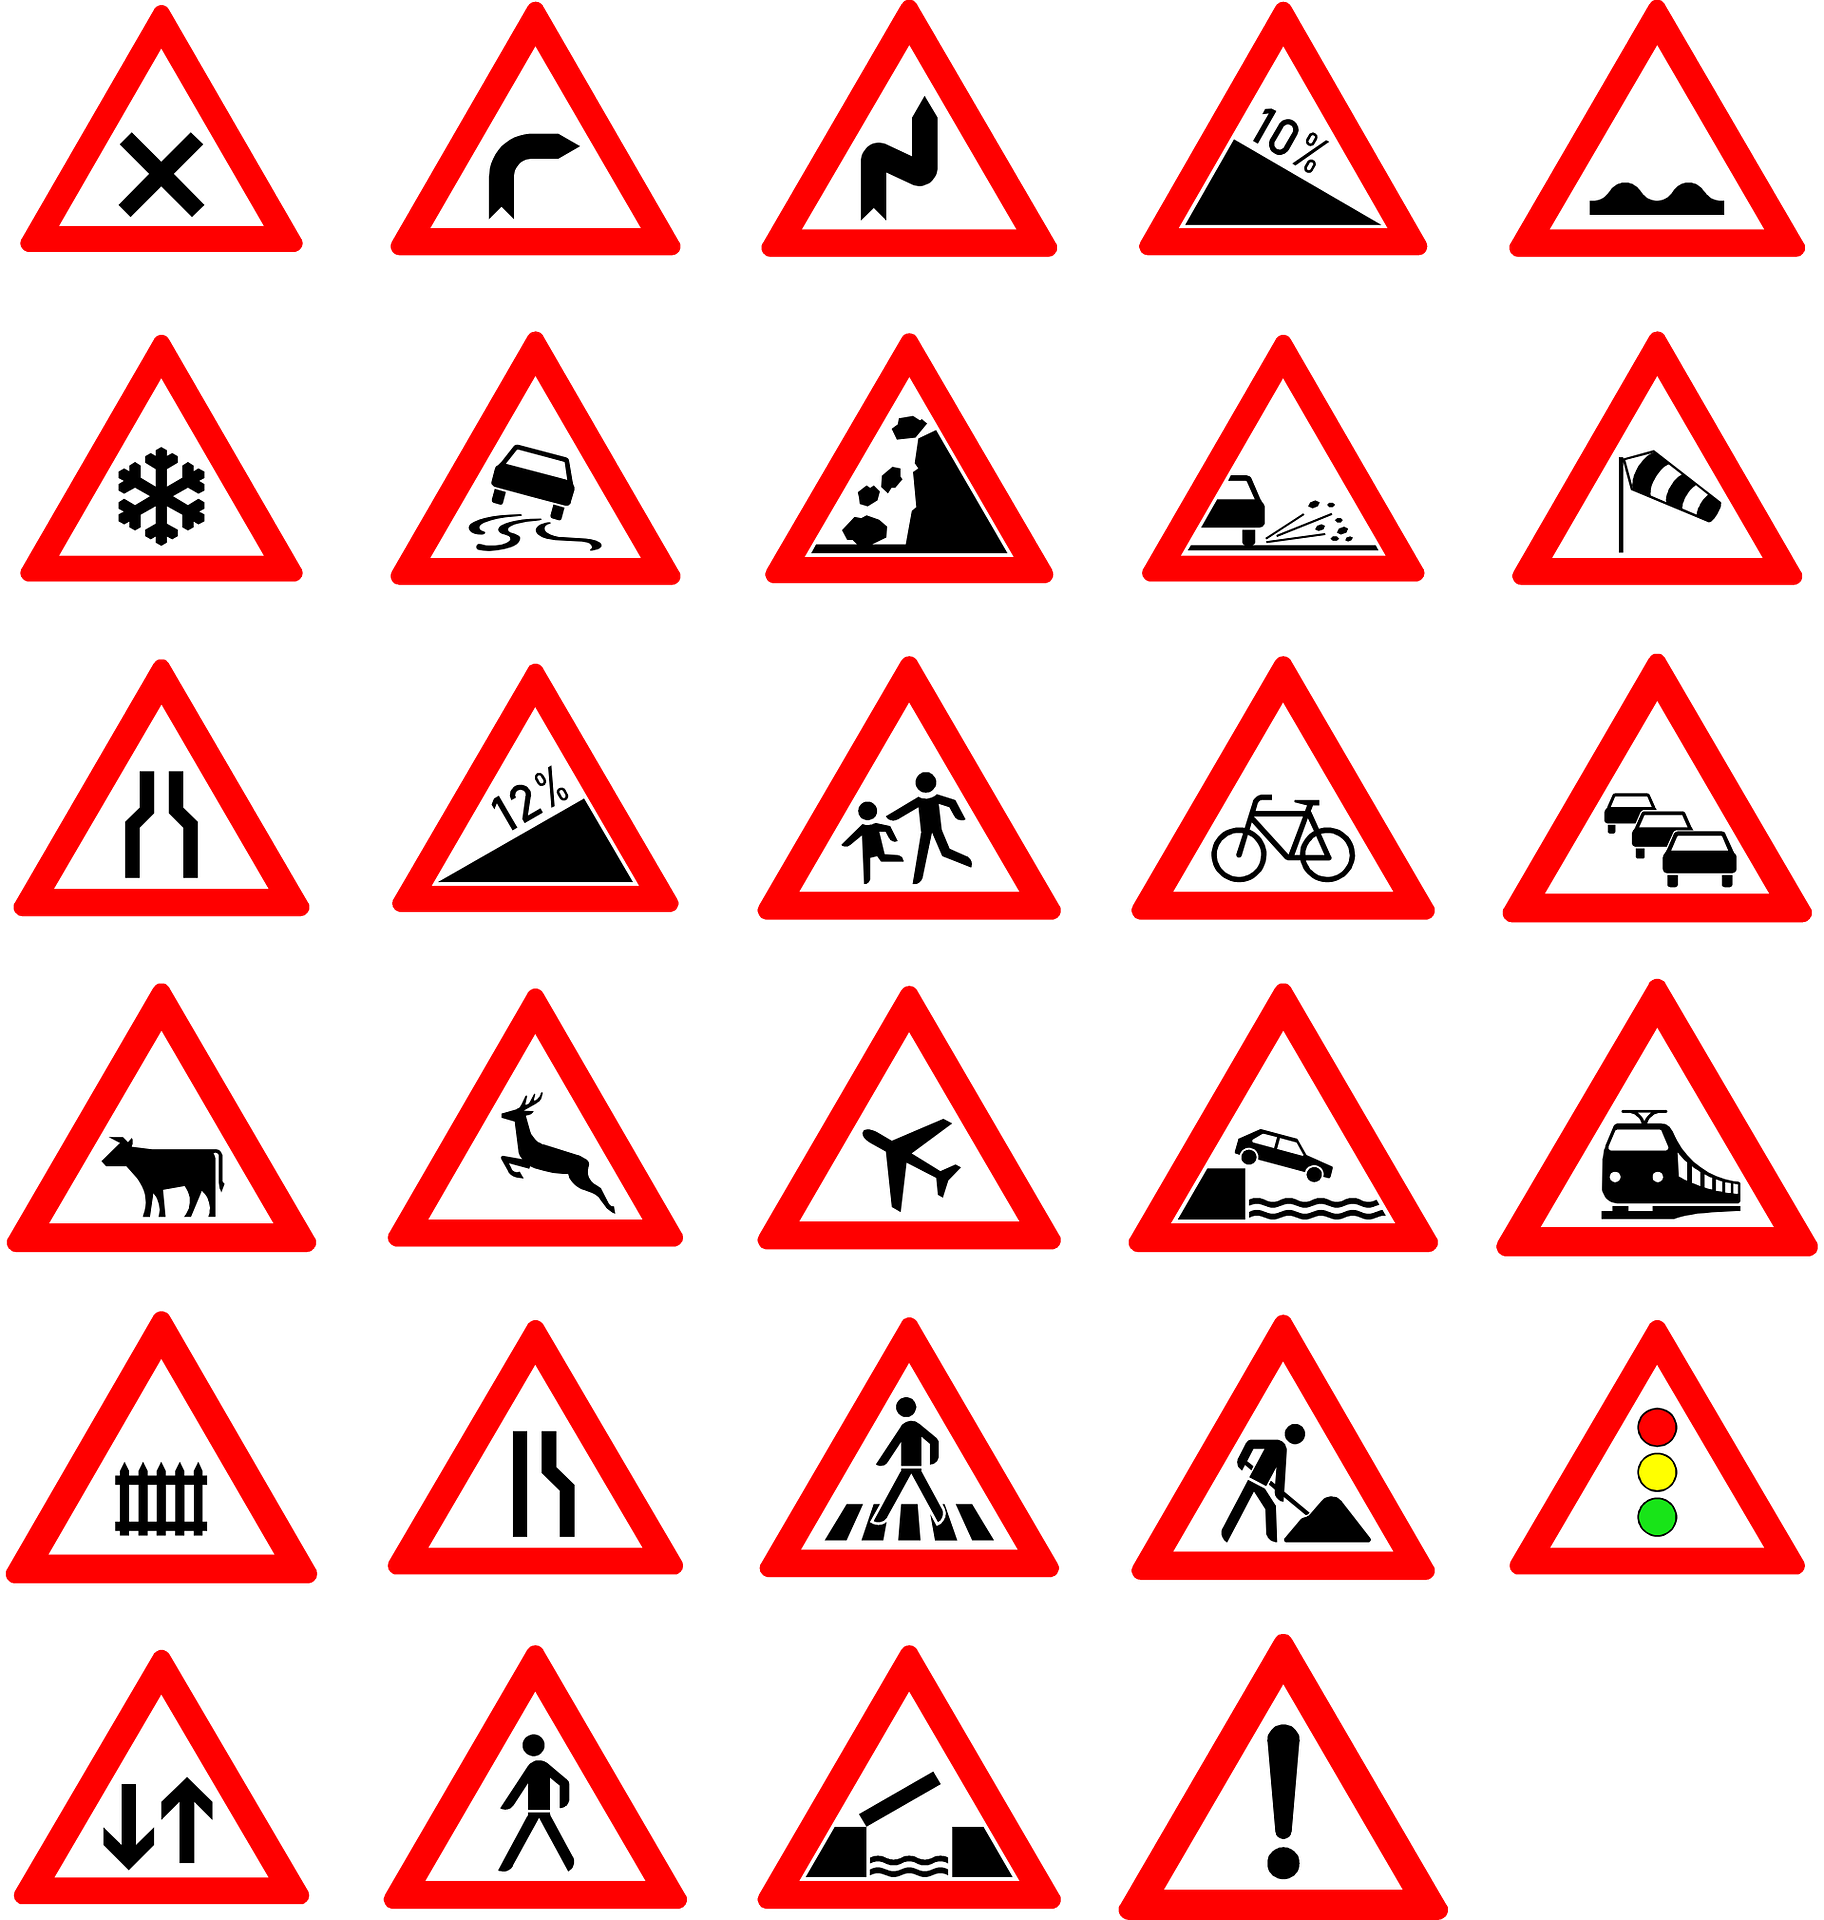 Señales de tráfico. Pixabay